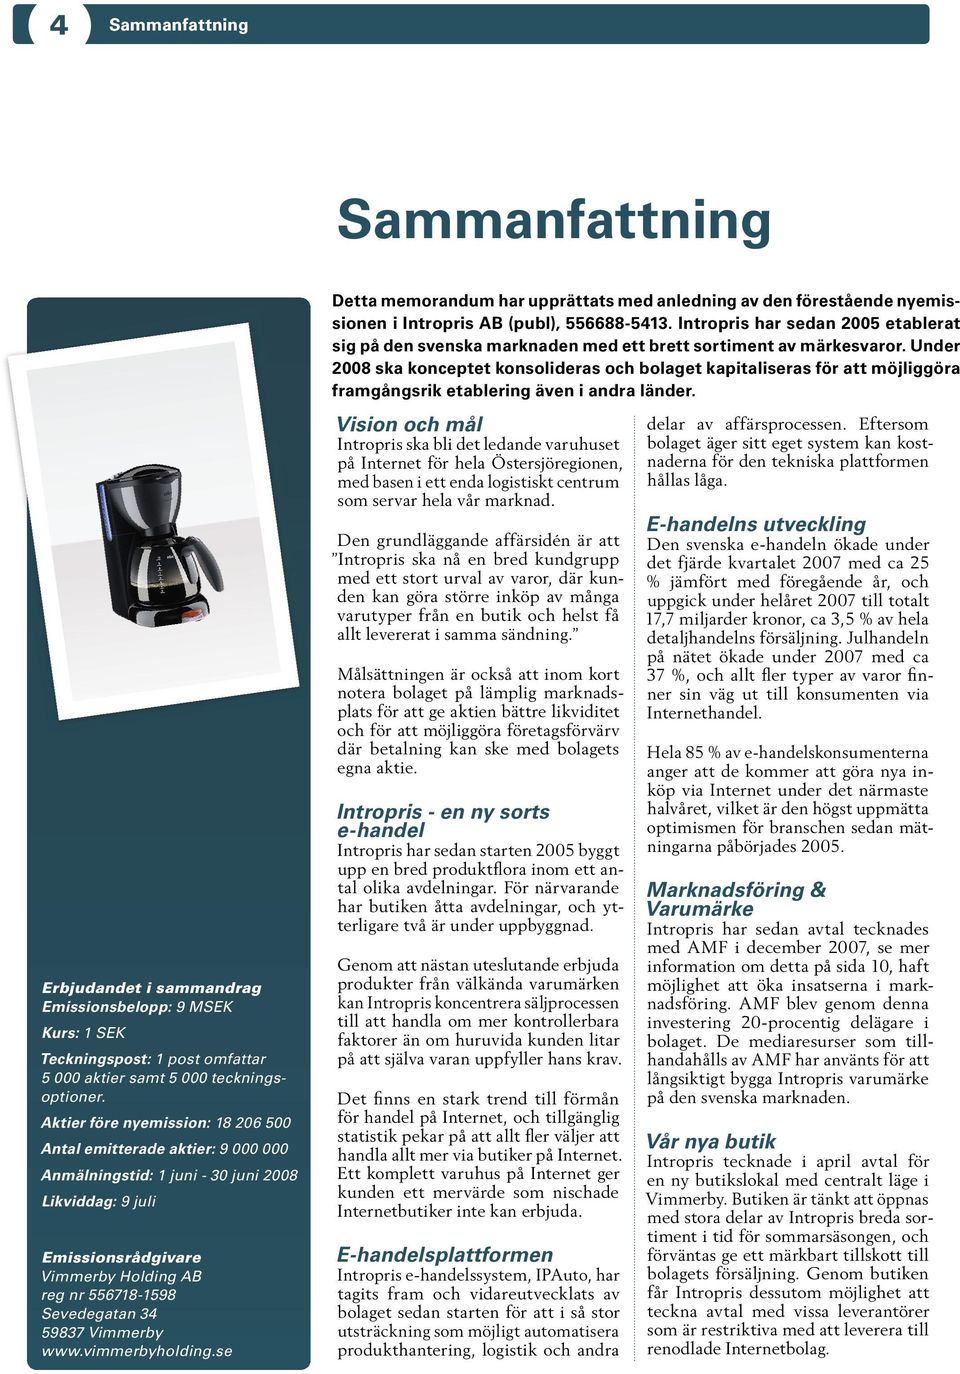 59837 Vimmerby www.vimmerbyholding.se Detta memorandum har upprättats med anledning av den förestående nyemissionen i Intropris AB (publ), 556688-5413.